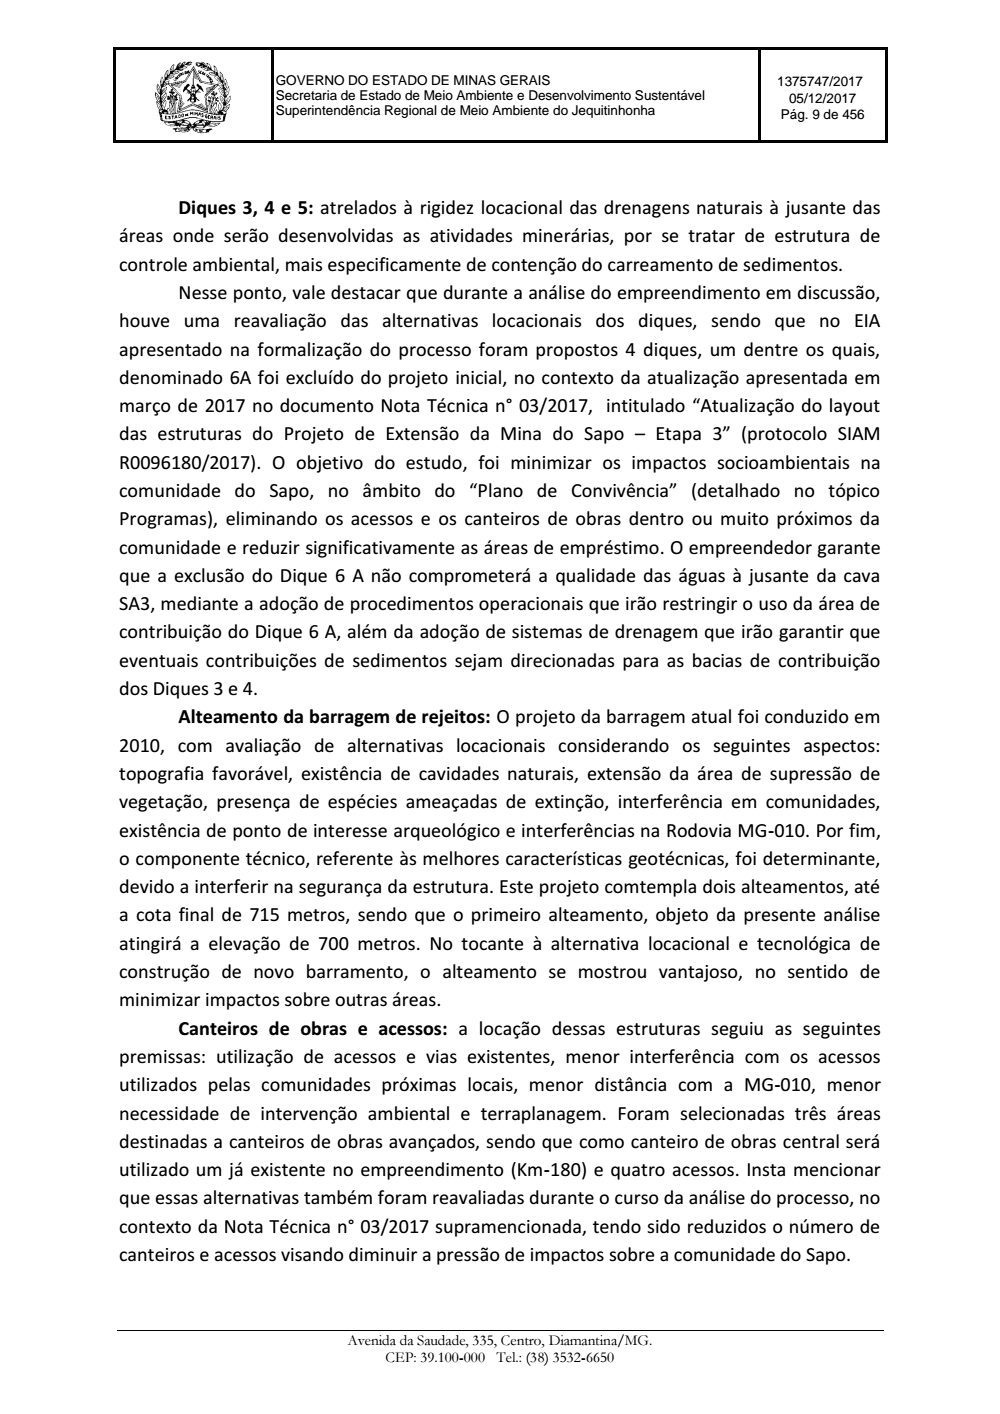 Page 9 from Parecer único da Secretaria de estado de Meio Ambiente e Desenvolvimento Sustentável (SEMAD)